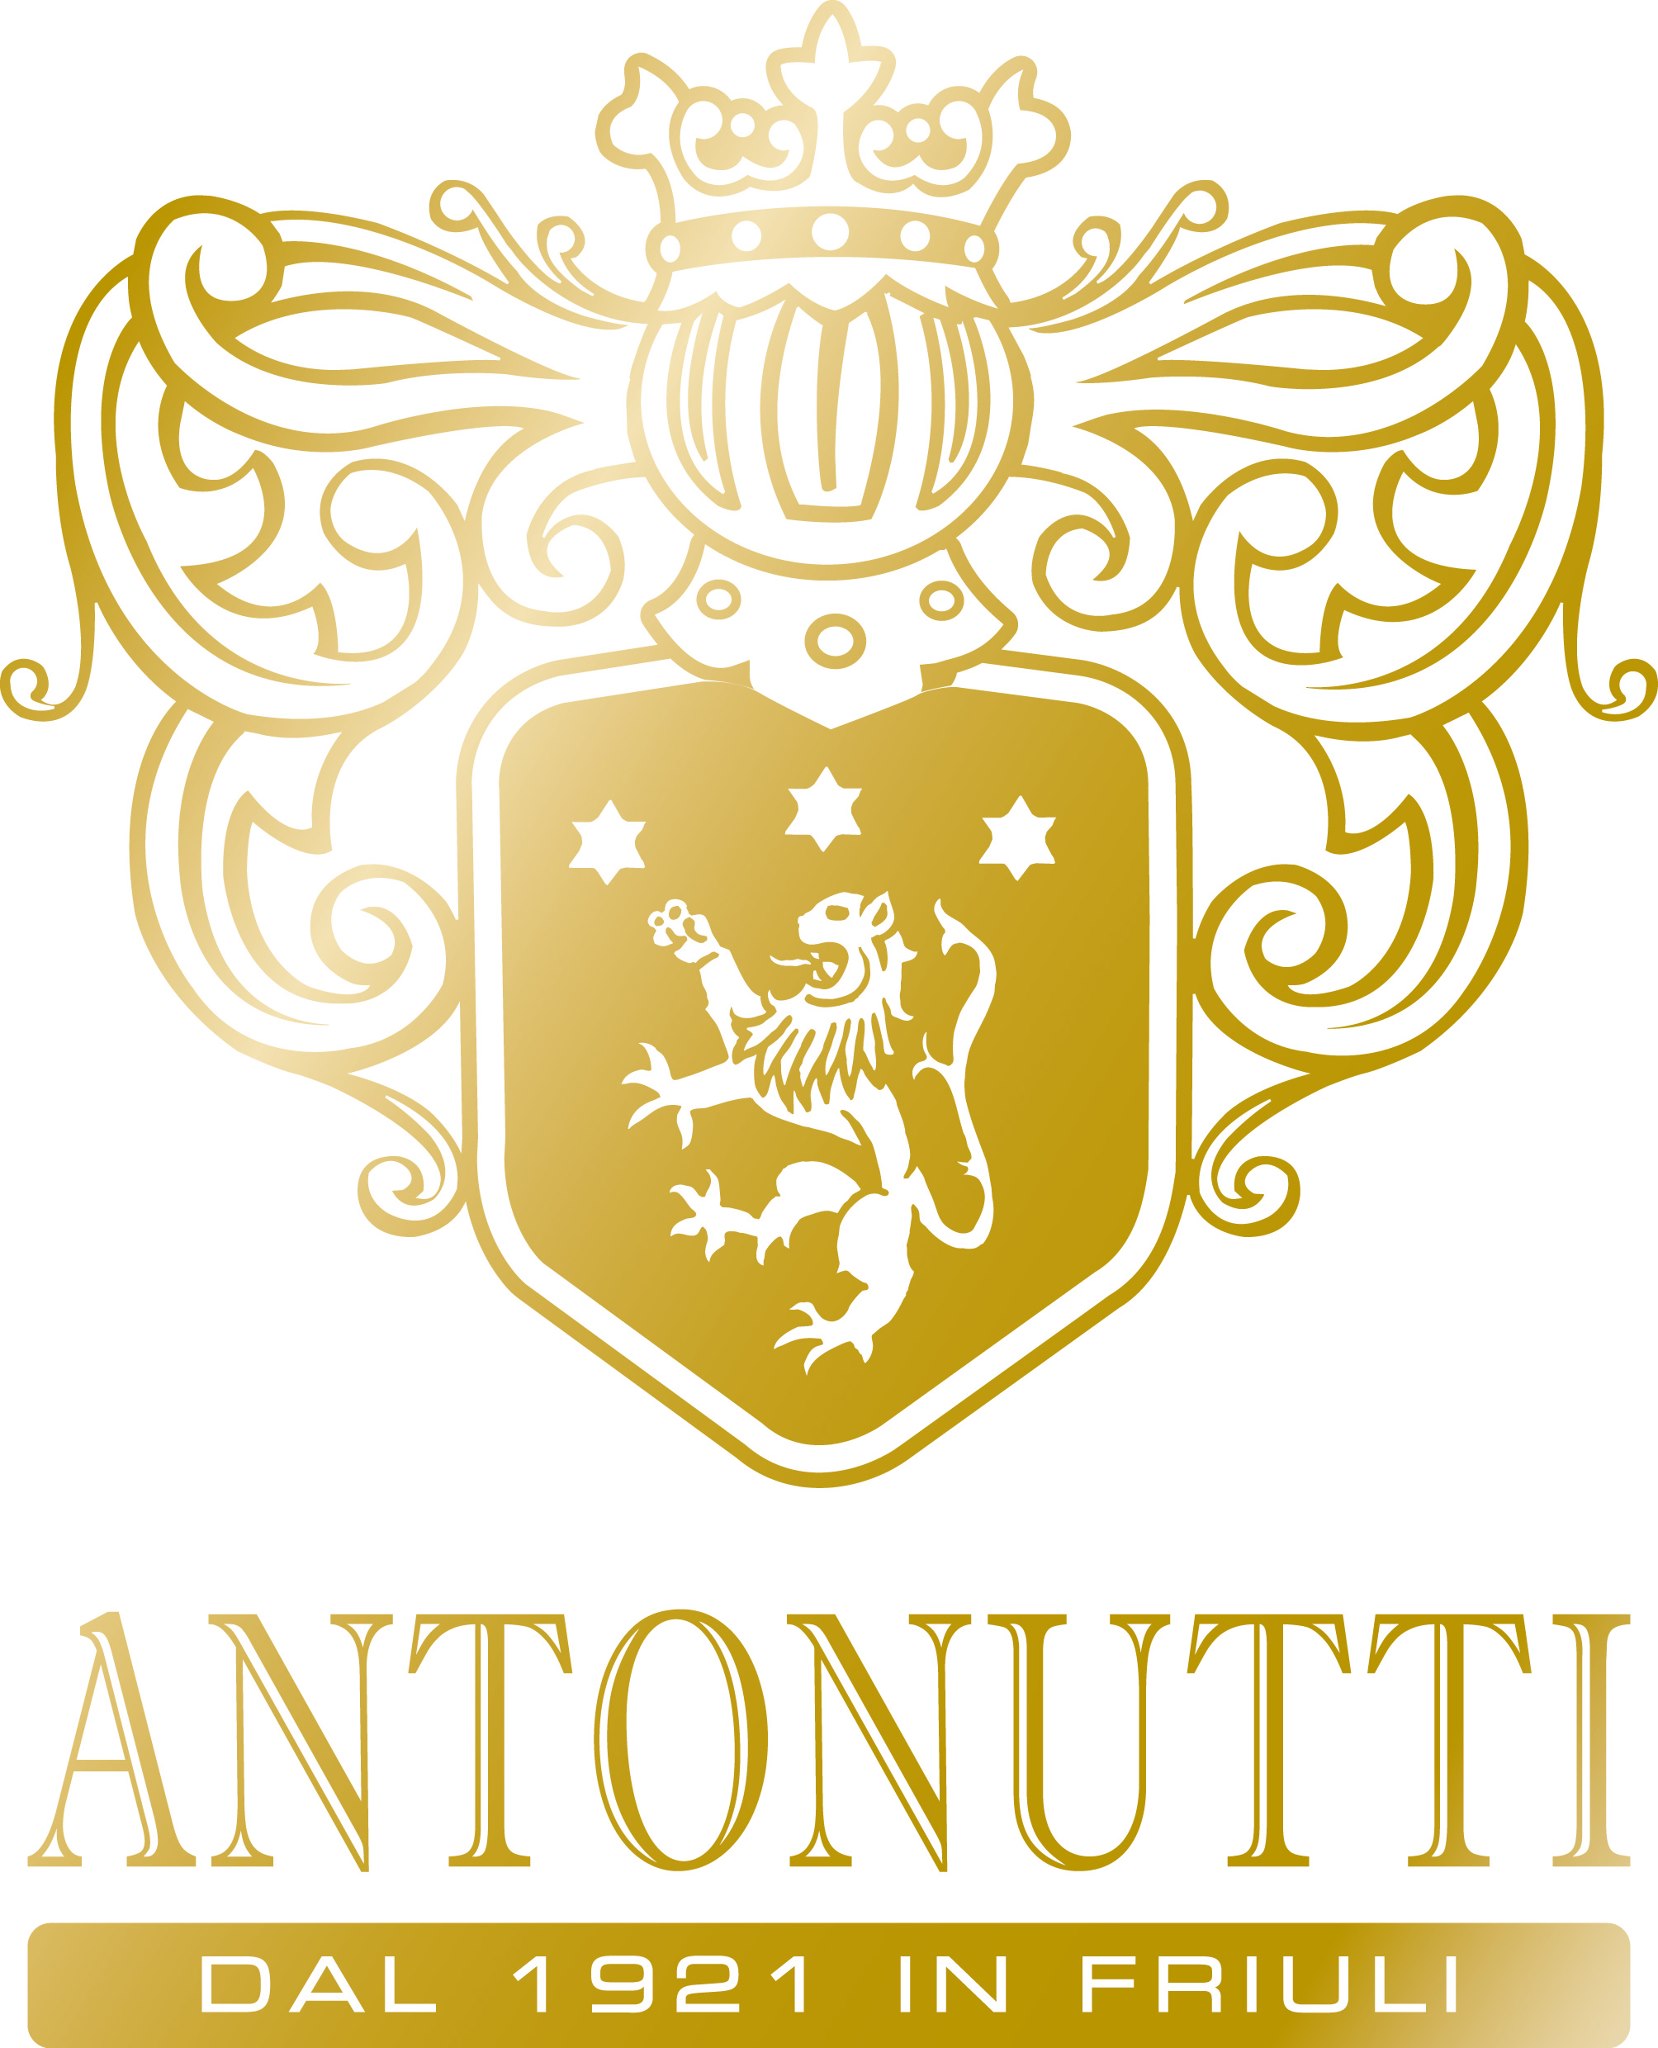 Antonutti アントヌッティ社